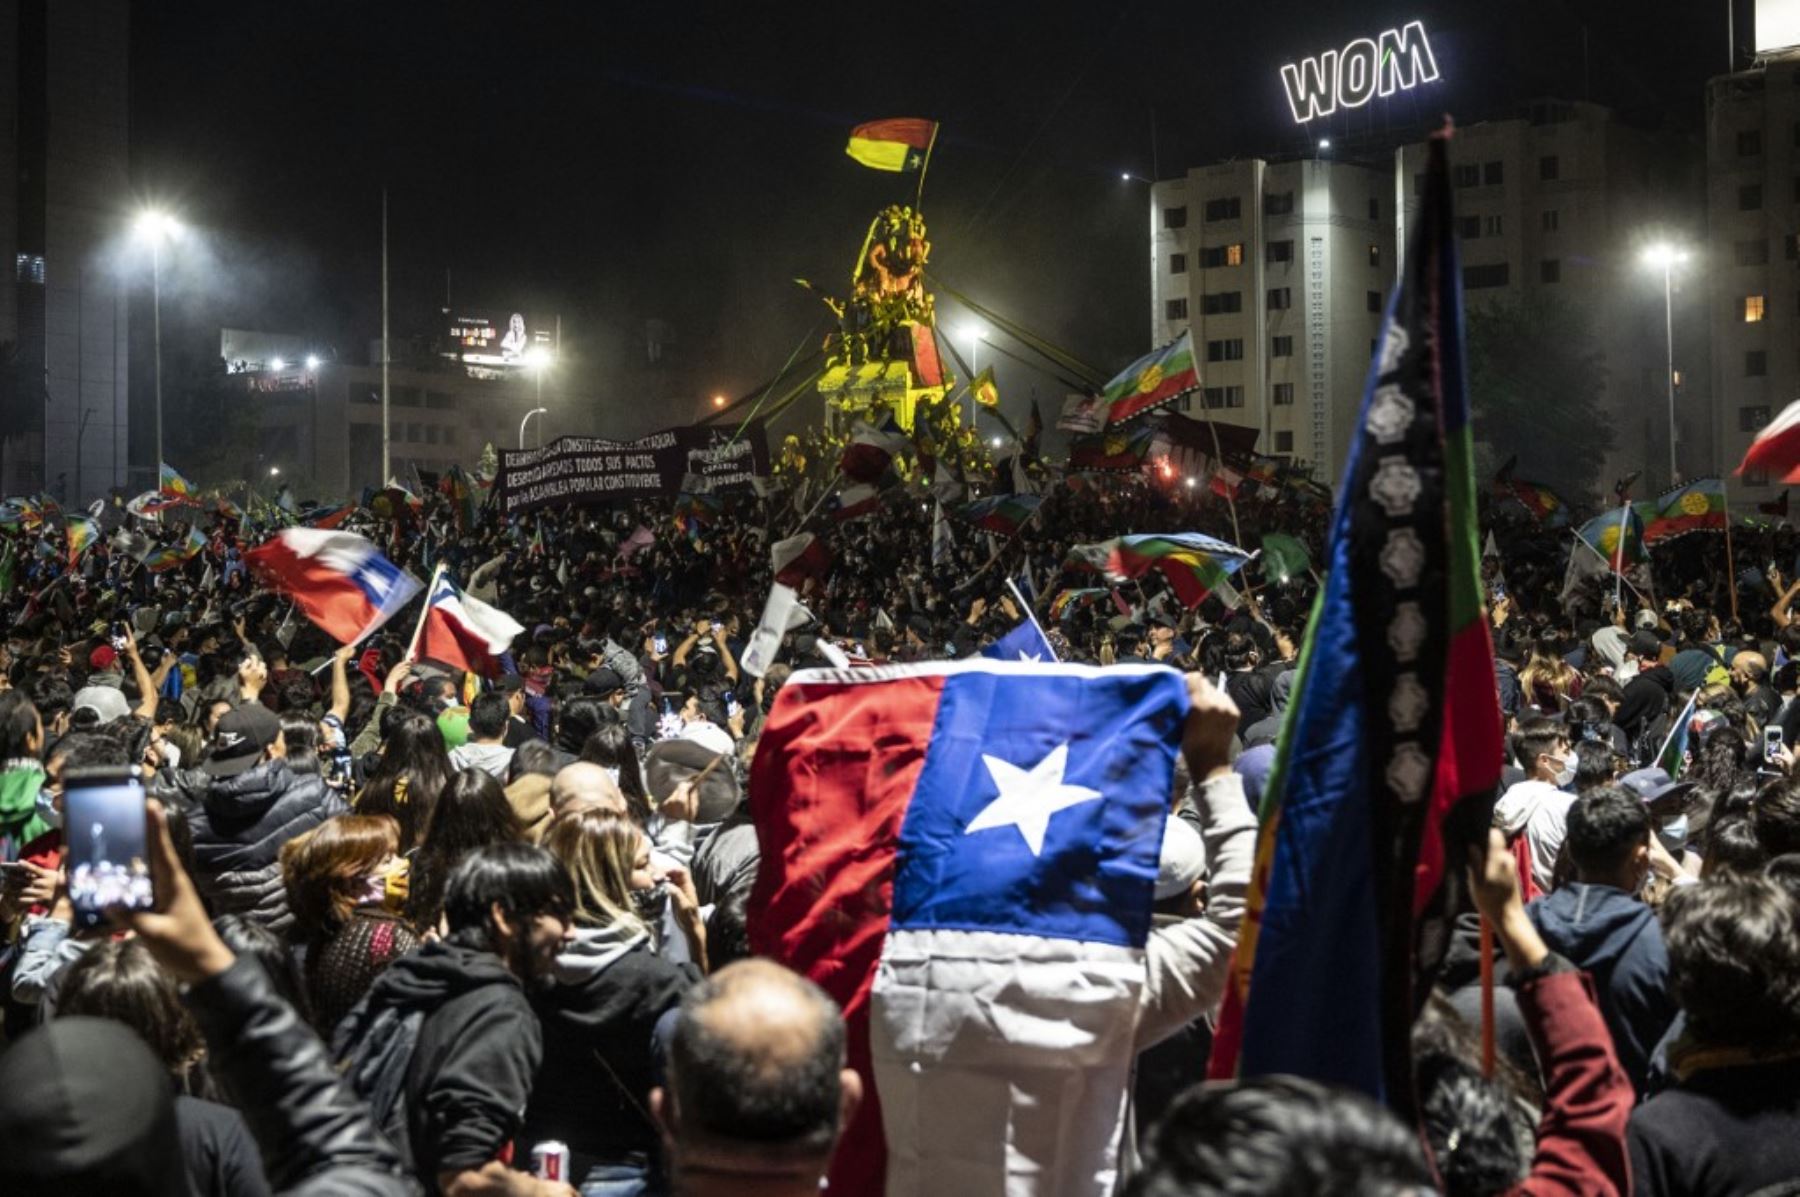 Los manifestantes que apoyan la reforma de la constitución chilena celebran mientras esperan los resultados oficiales del referéndum en la Plaza Italia en Santiago. Foto: AFP